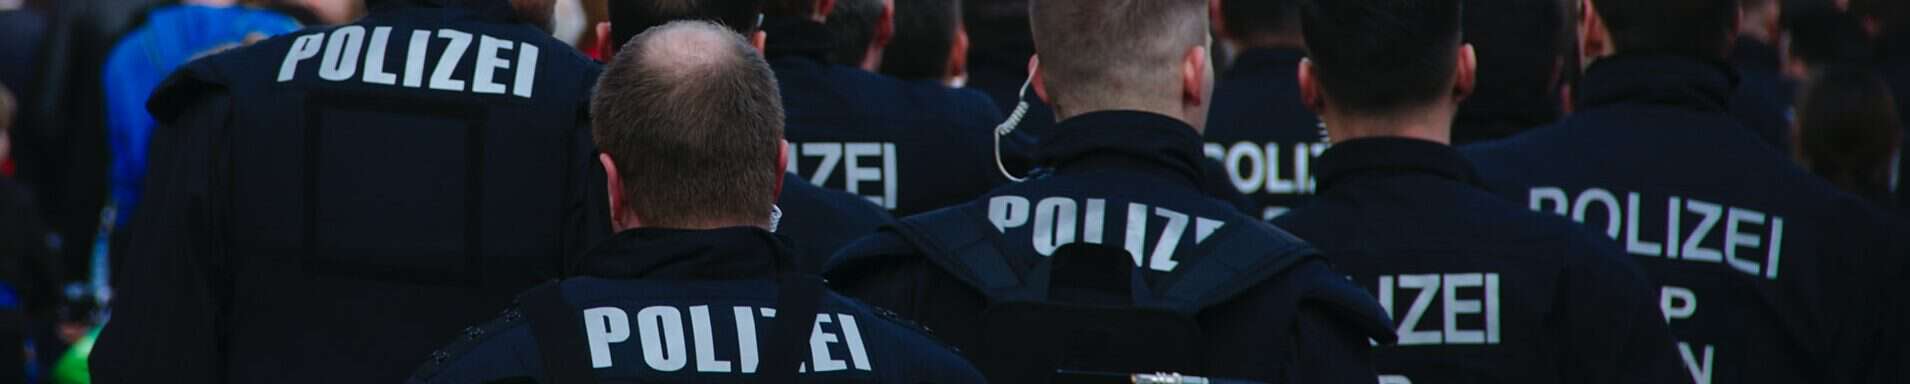 PIRATEN kritisieren Stammbaumforschung der Stuttgarter Polizei